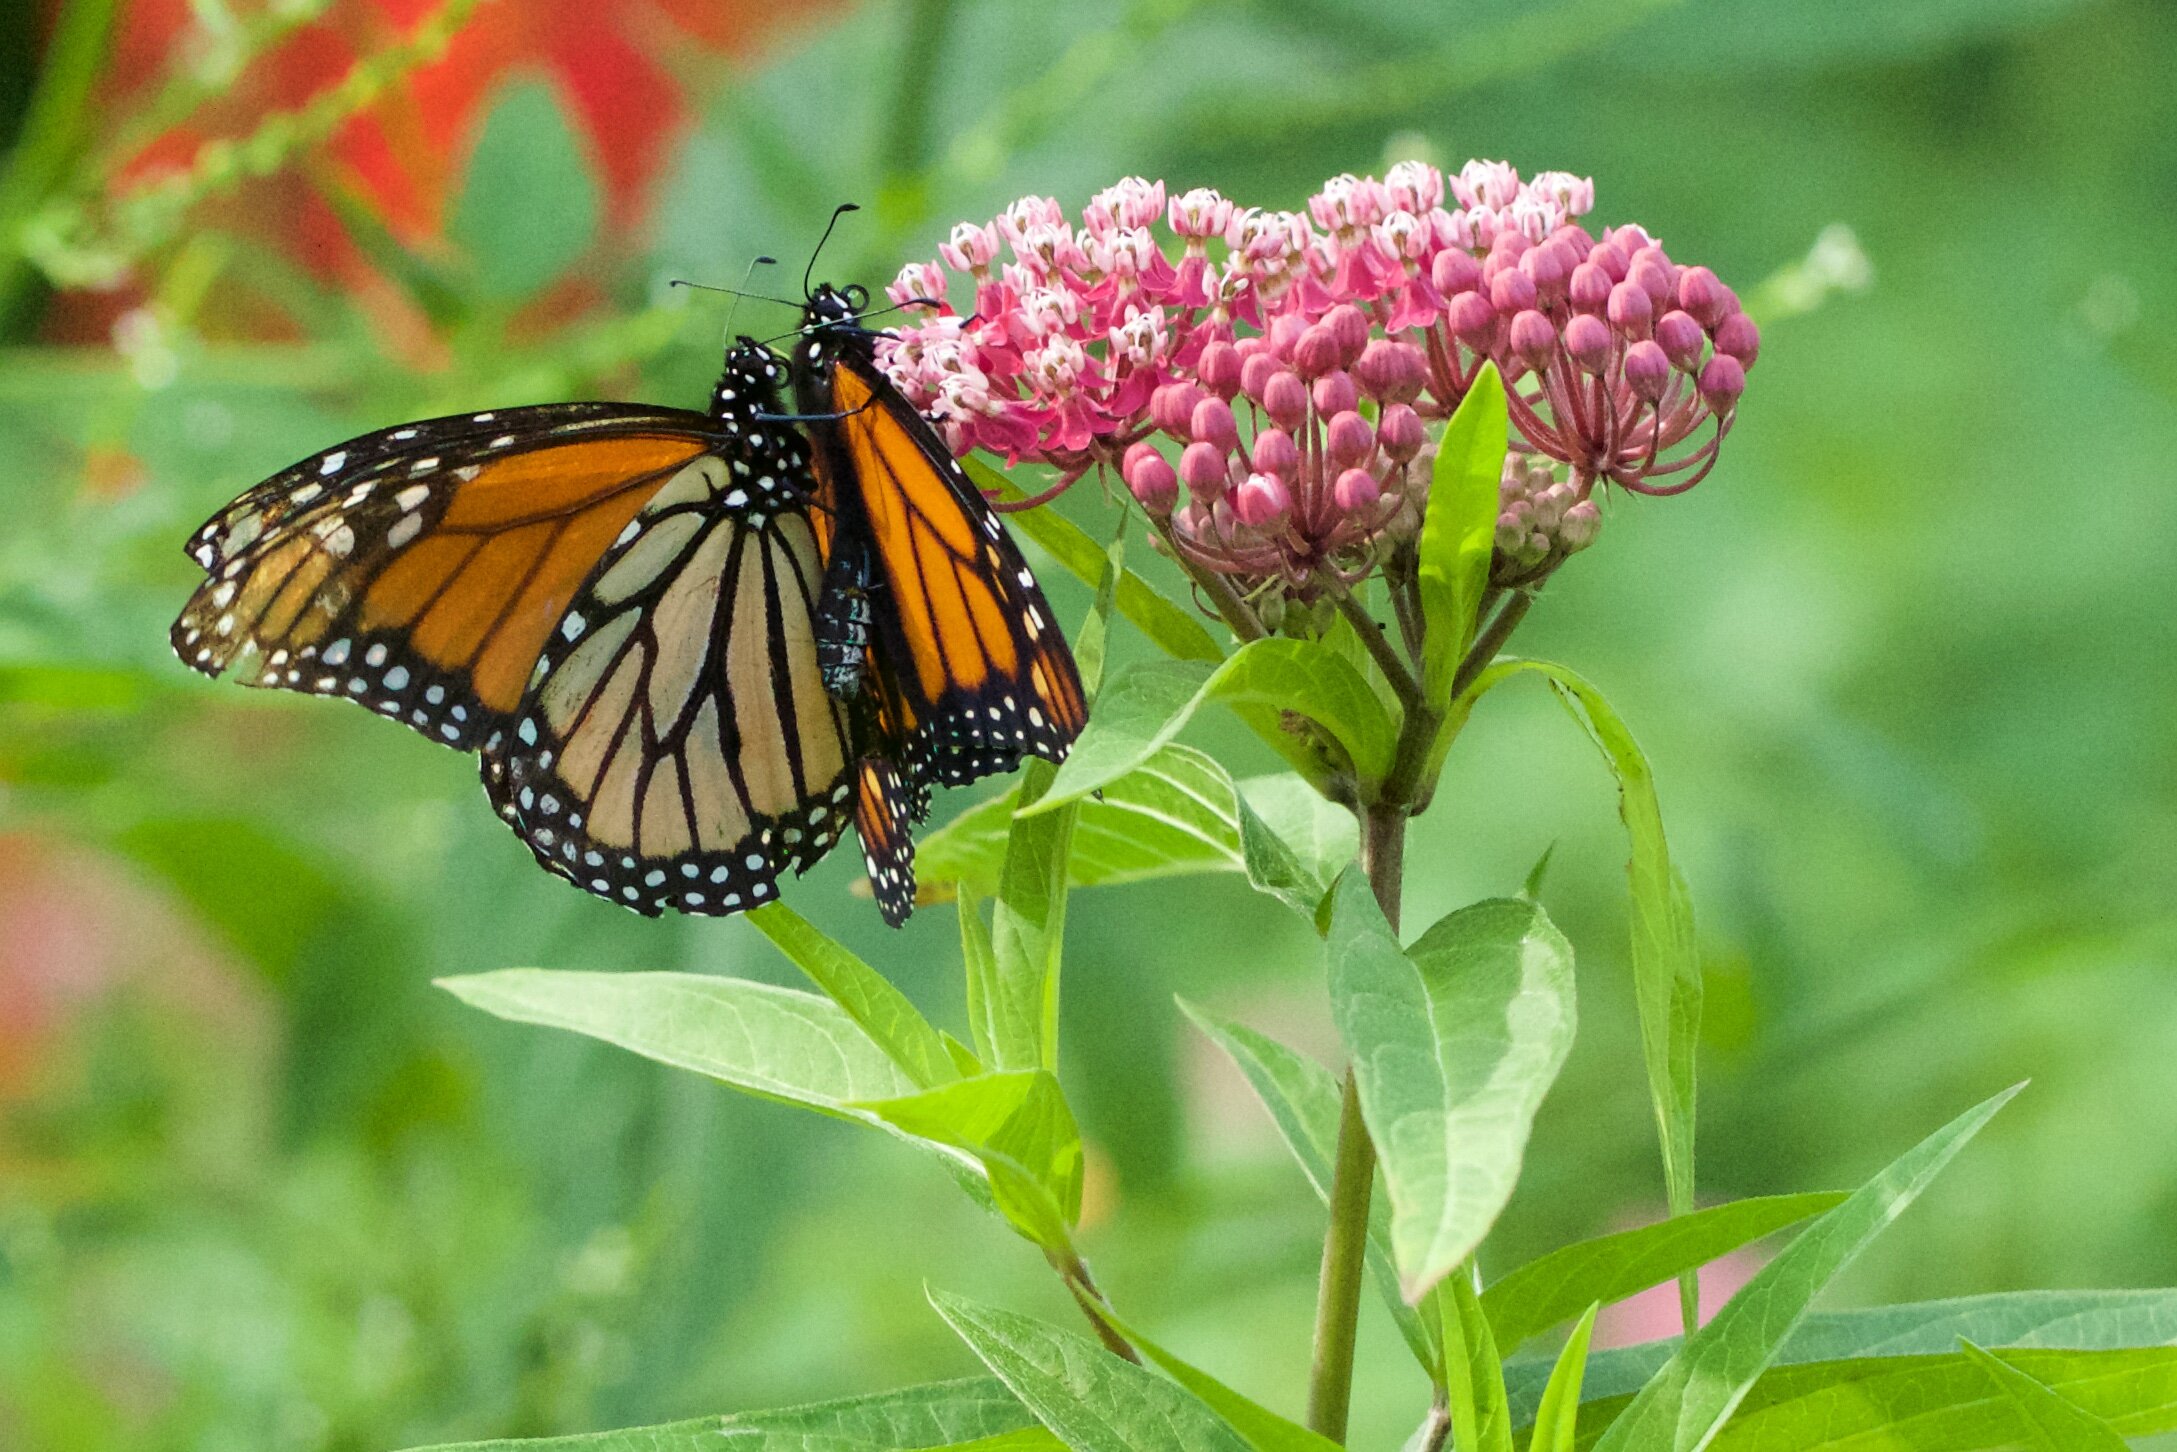 Monarchs on swamp milkweed 2 - AK.jpg